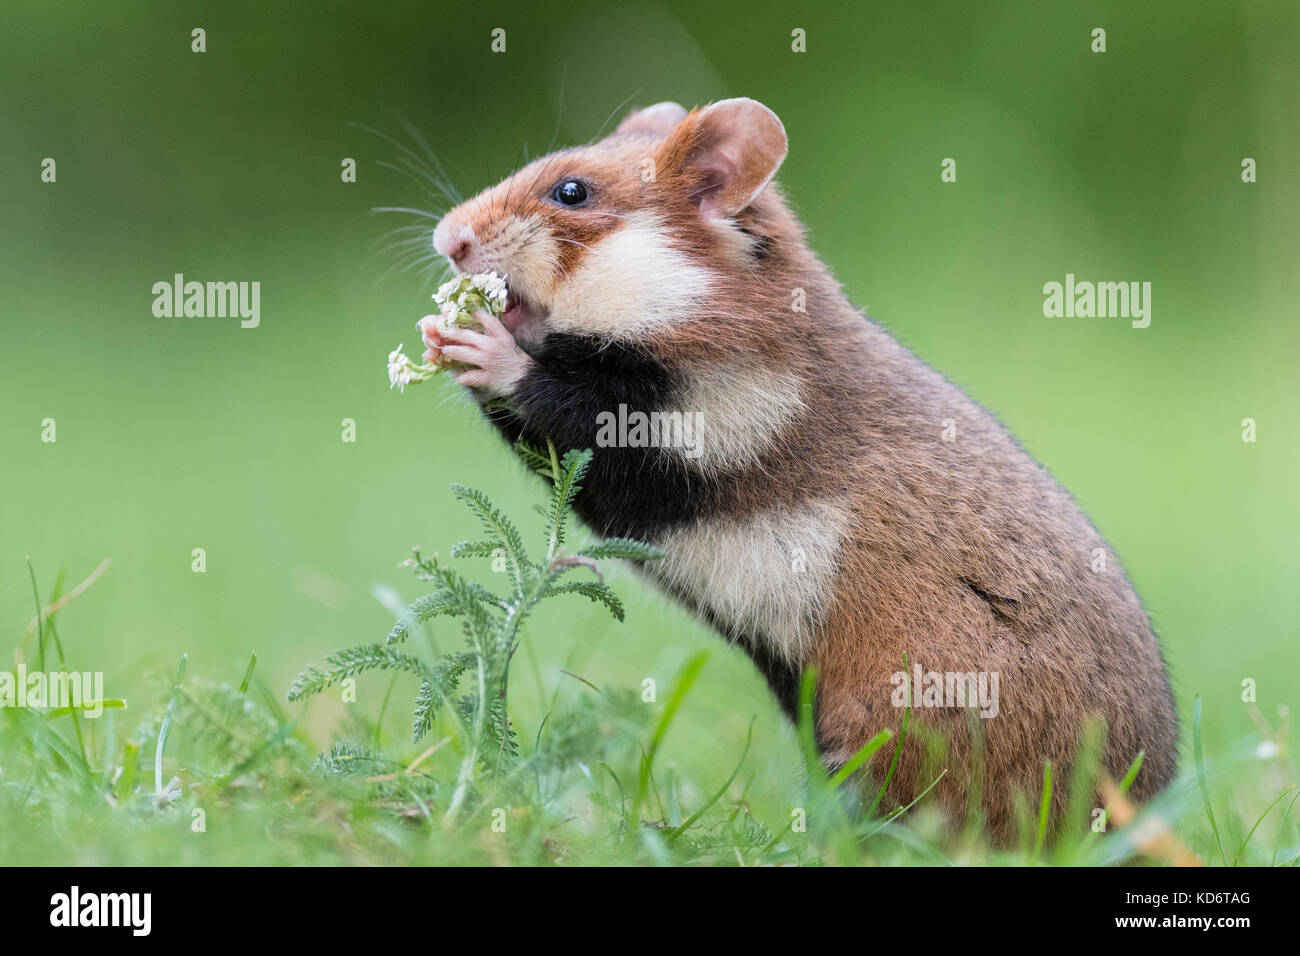 Grand hamster (Cricetus cricetus) en prairie, vienne, autriche Banque D'Images